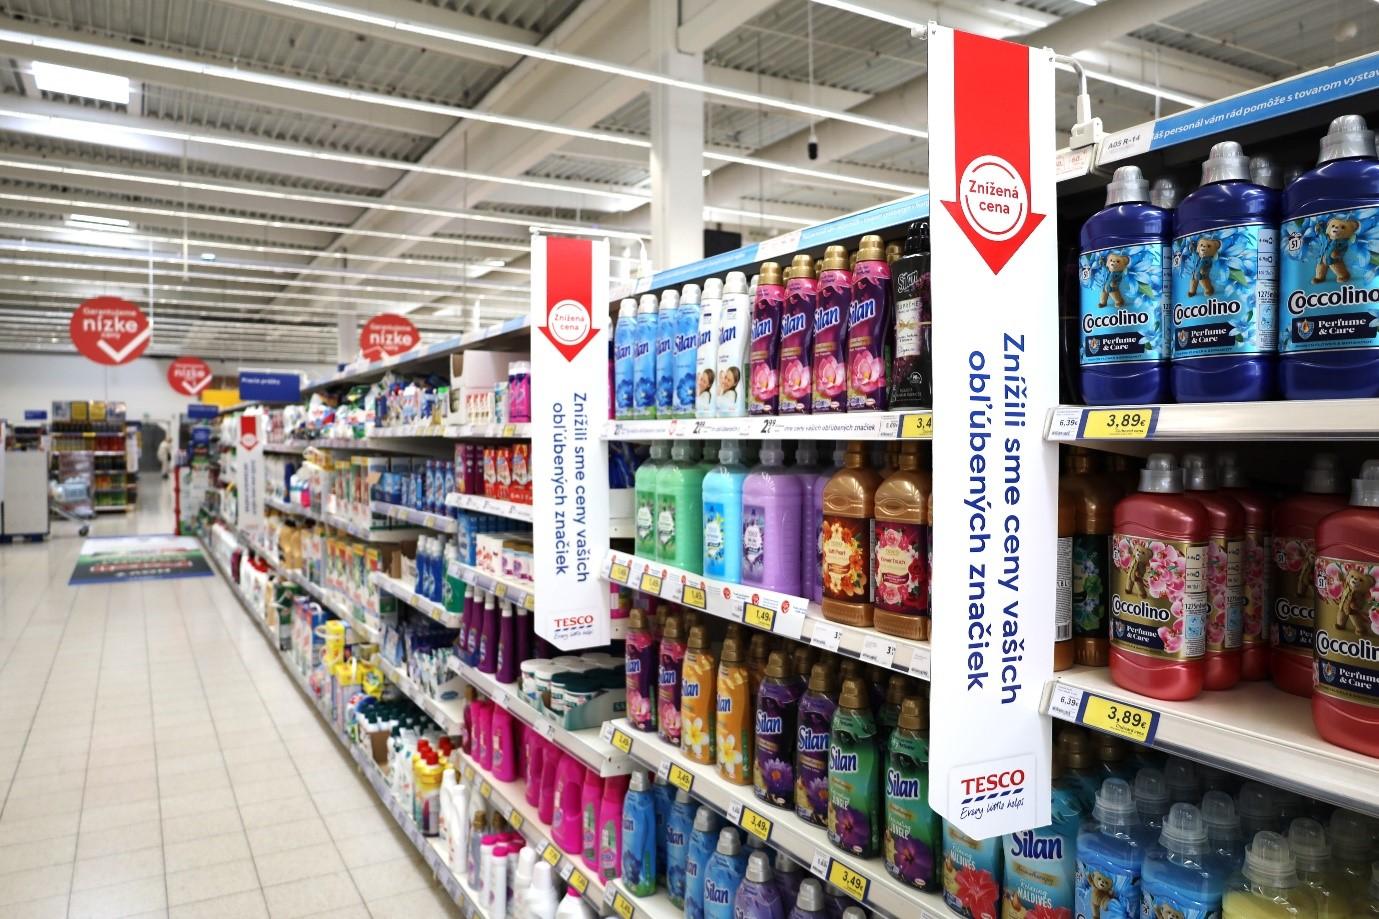 Výrazné červené logo „Znížená cena“ je symbol, ktorý zákazníkom ukáže smer, kde nájdu zľavnené produkty v predajniach Tesco naprieč Slovenskom.